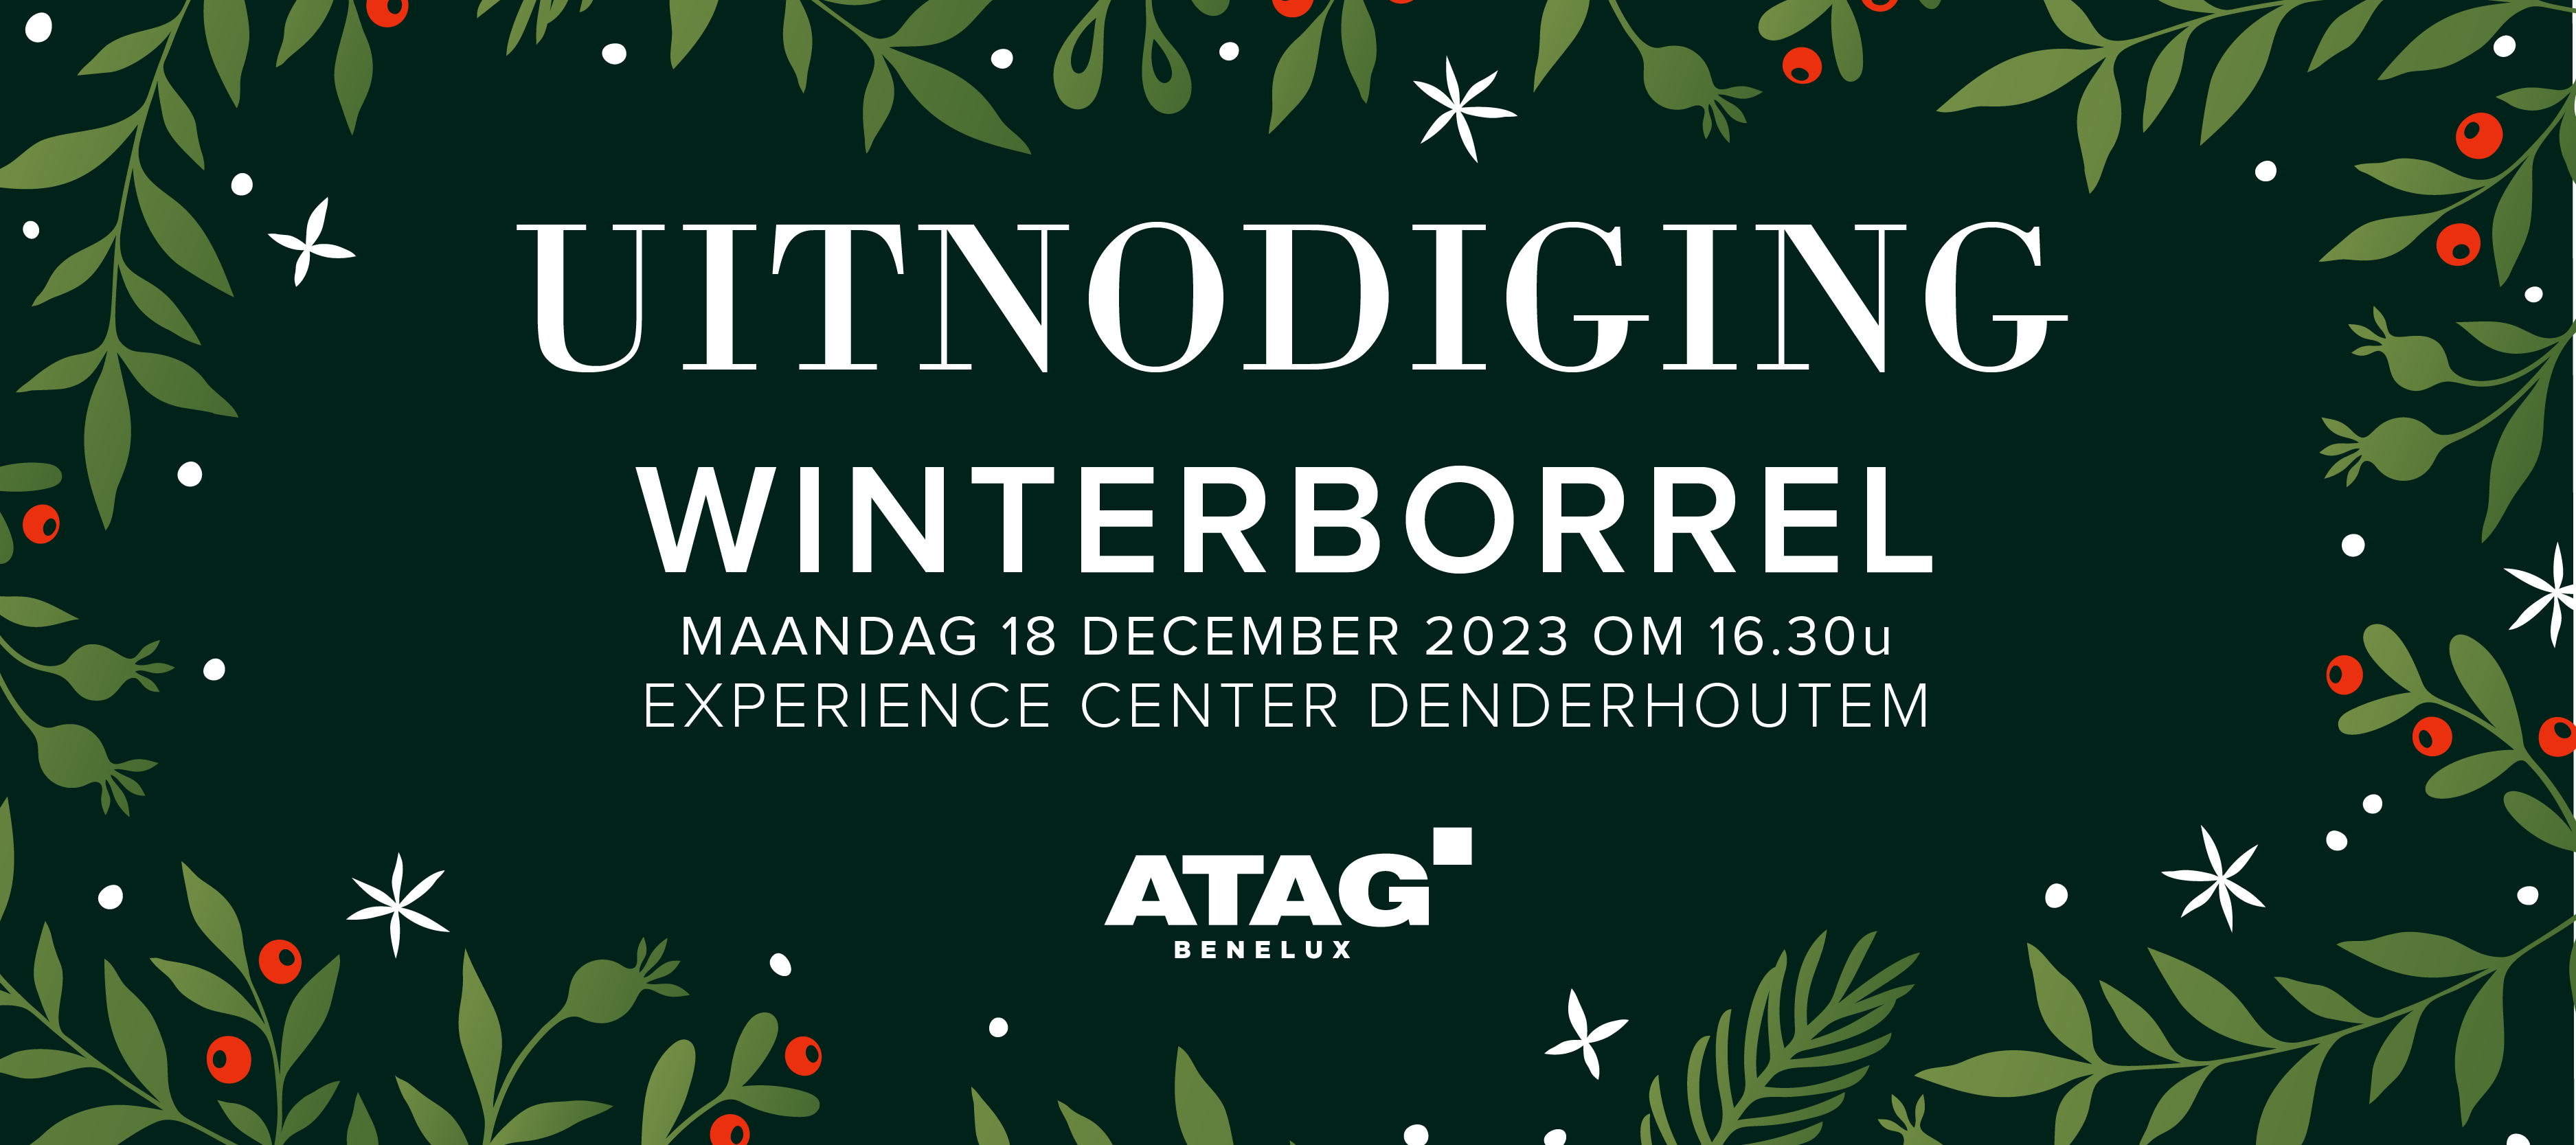 Uitnodiging: ATAG winterborrel op 18 december 2023